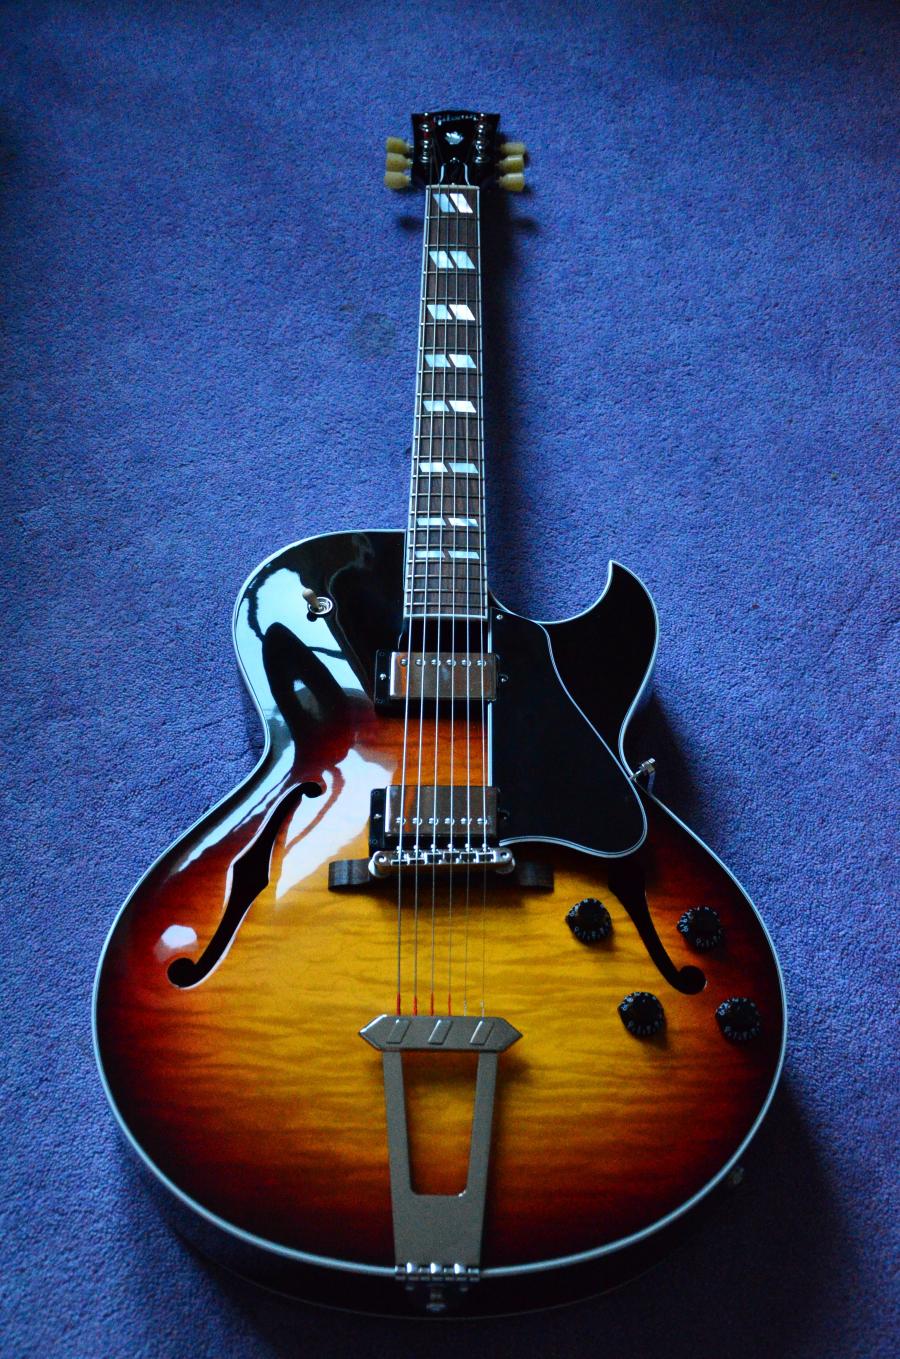 The Venerable Gibson L-5-dsc_7922-jpg